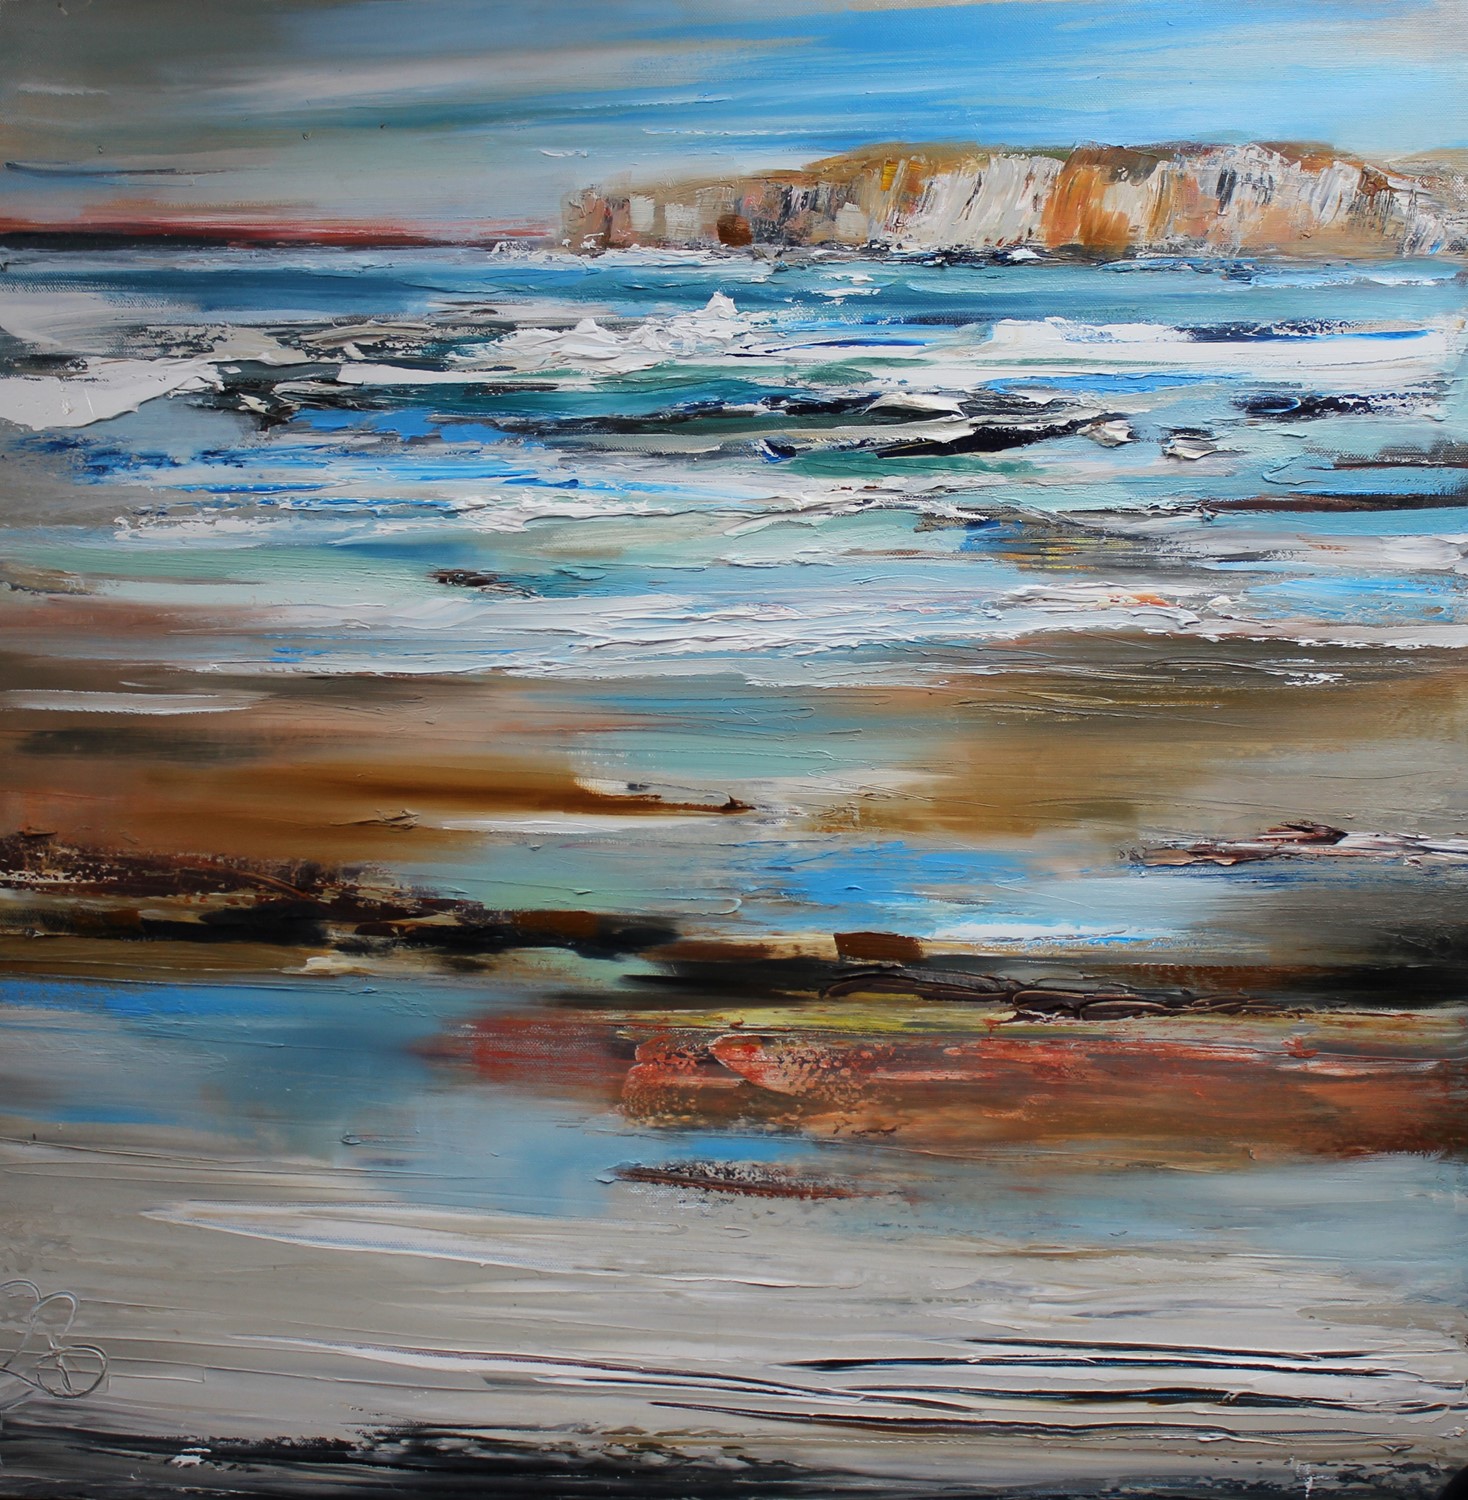 'High Cliffs and Aqua Seas ' by artist Rosanne Barr